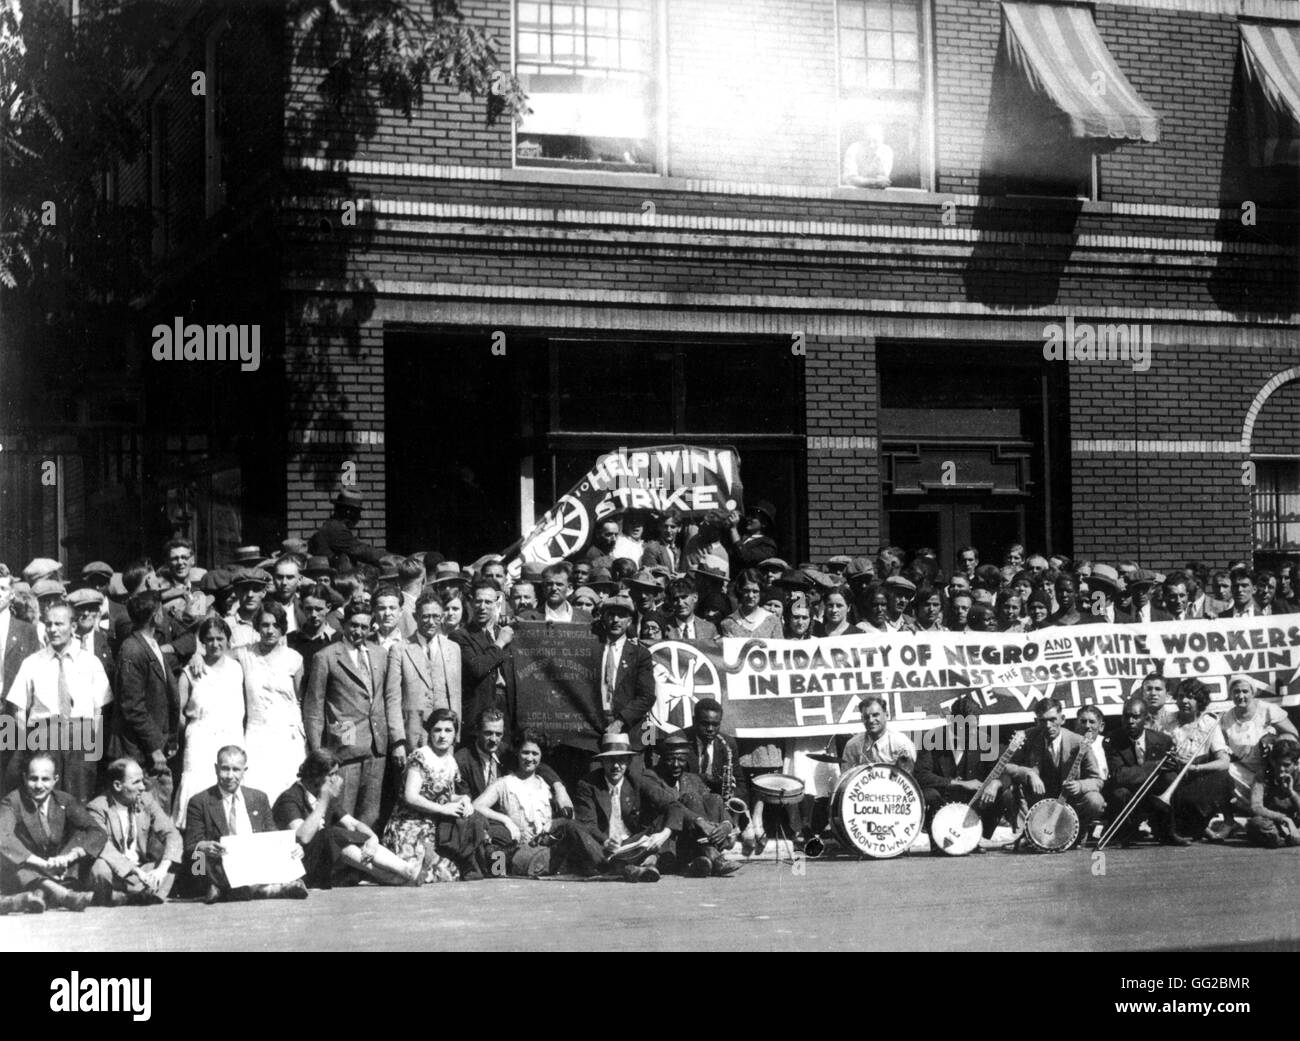 Huelga de solidaridad de los trabajadores blancos y negros c.1922-1925 Estados Unidos Nueva York. Biblioteca pública Foto de stock